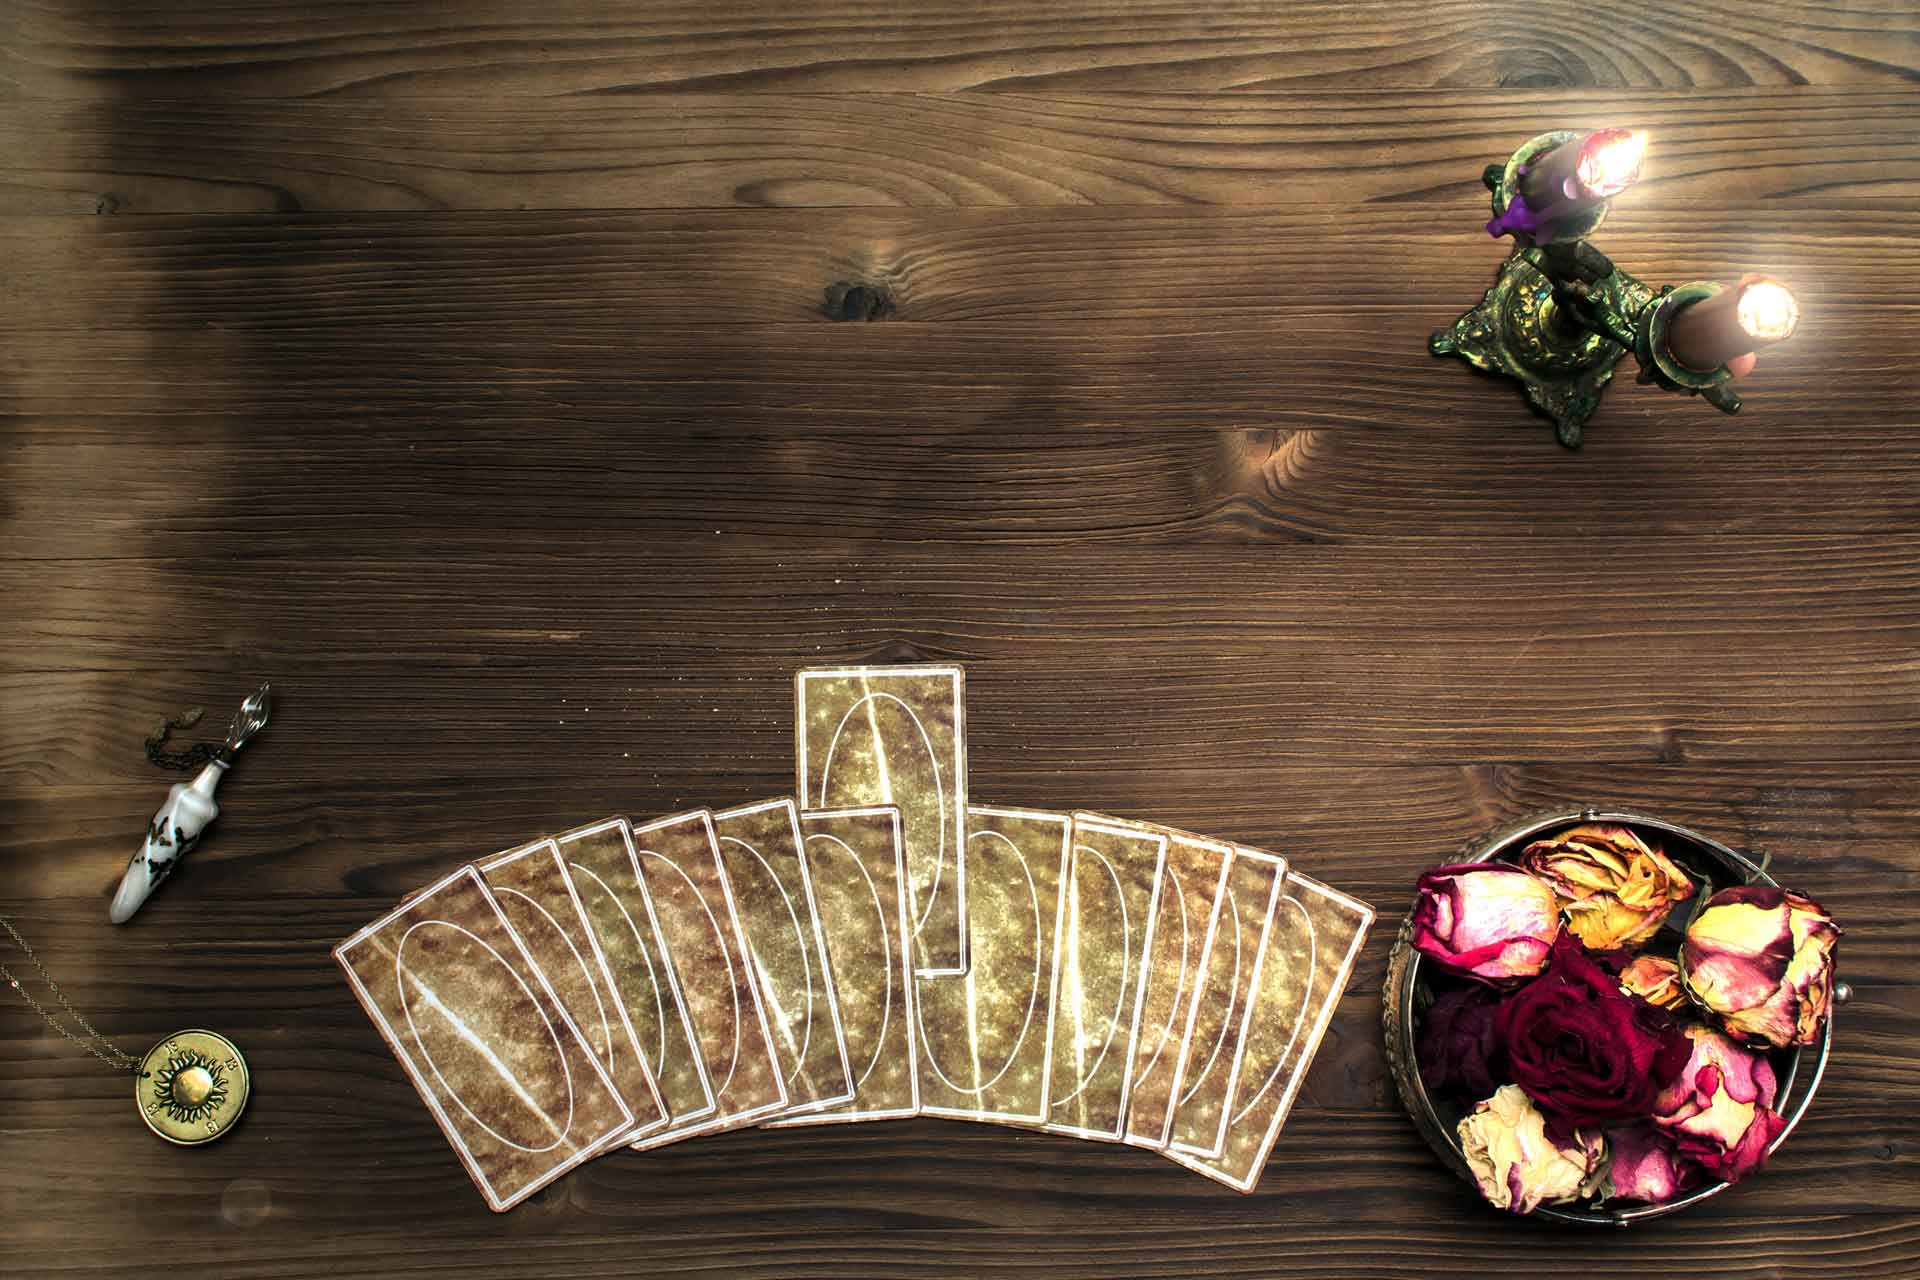 astrology tarot cards reading